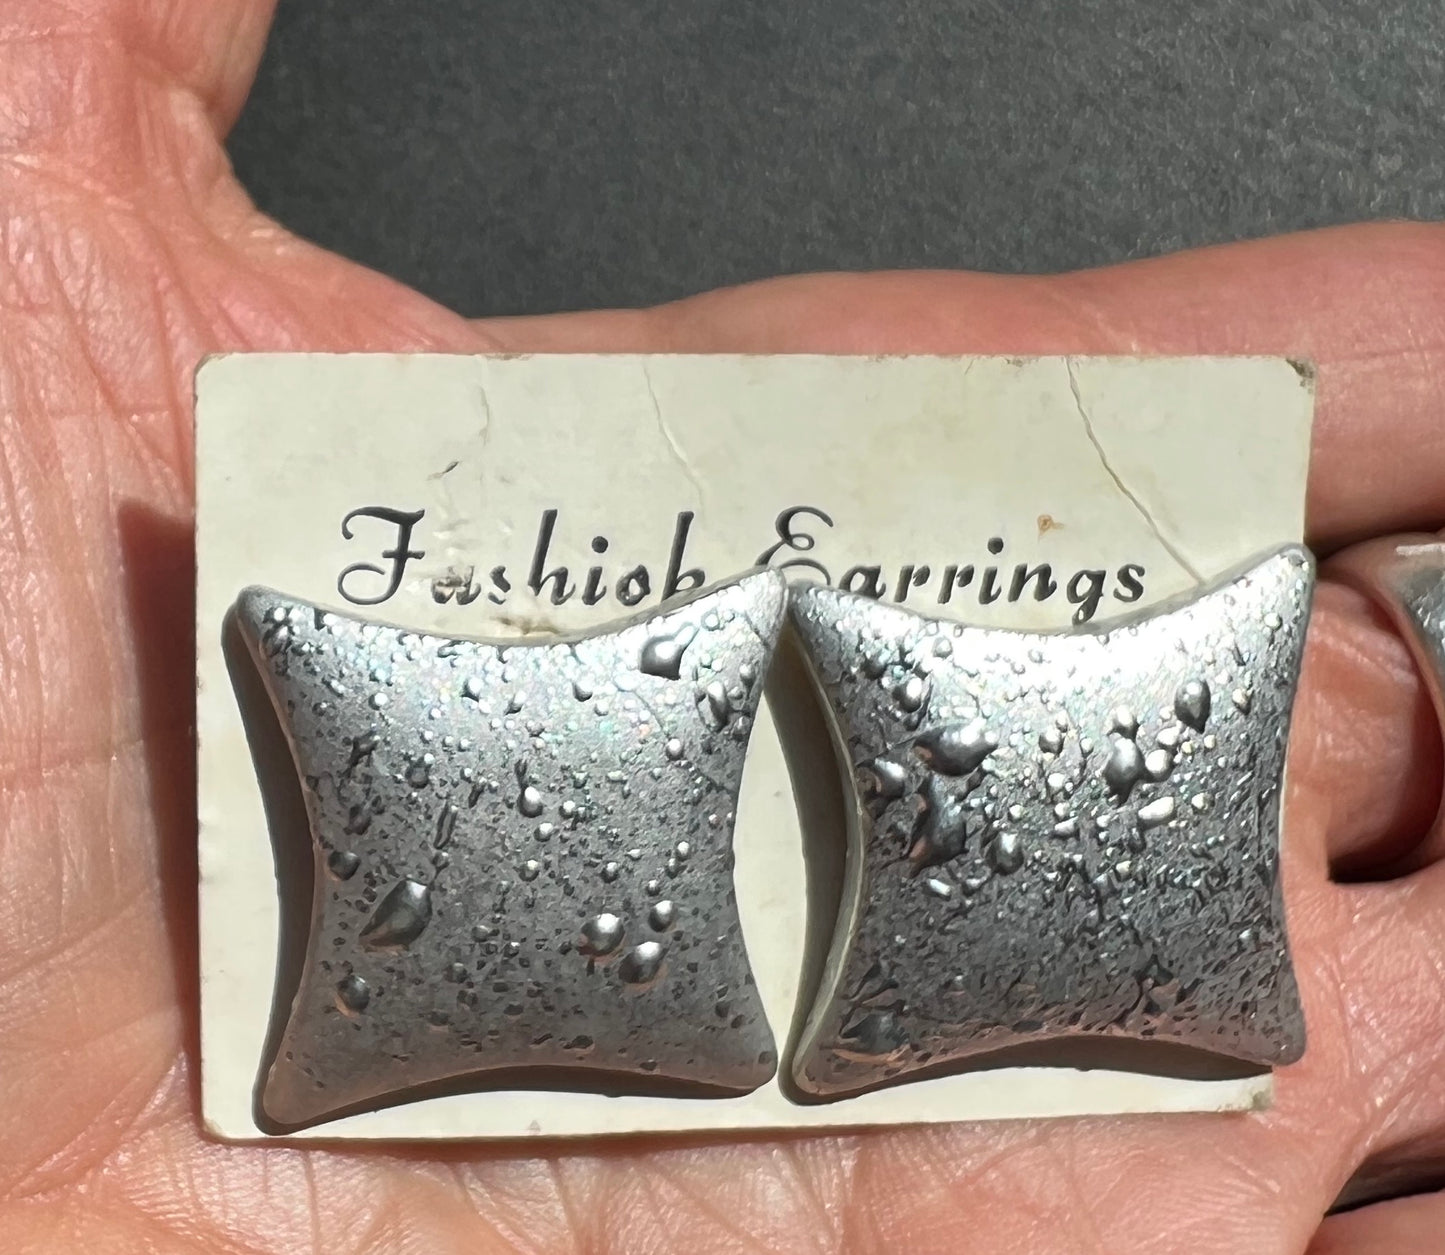 Silver 1980s Splatter Earrings